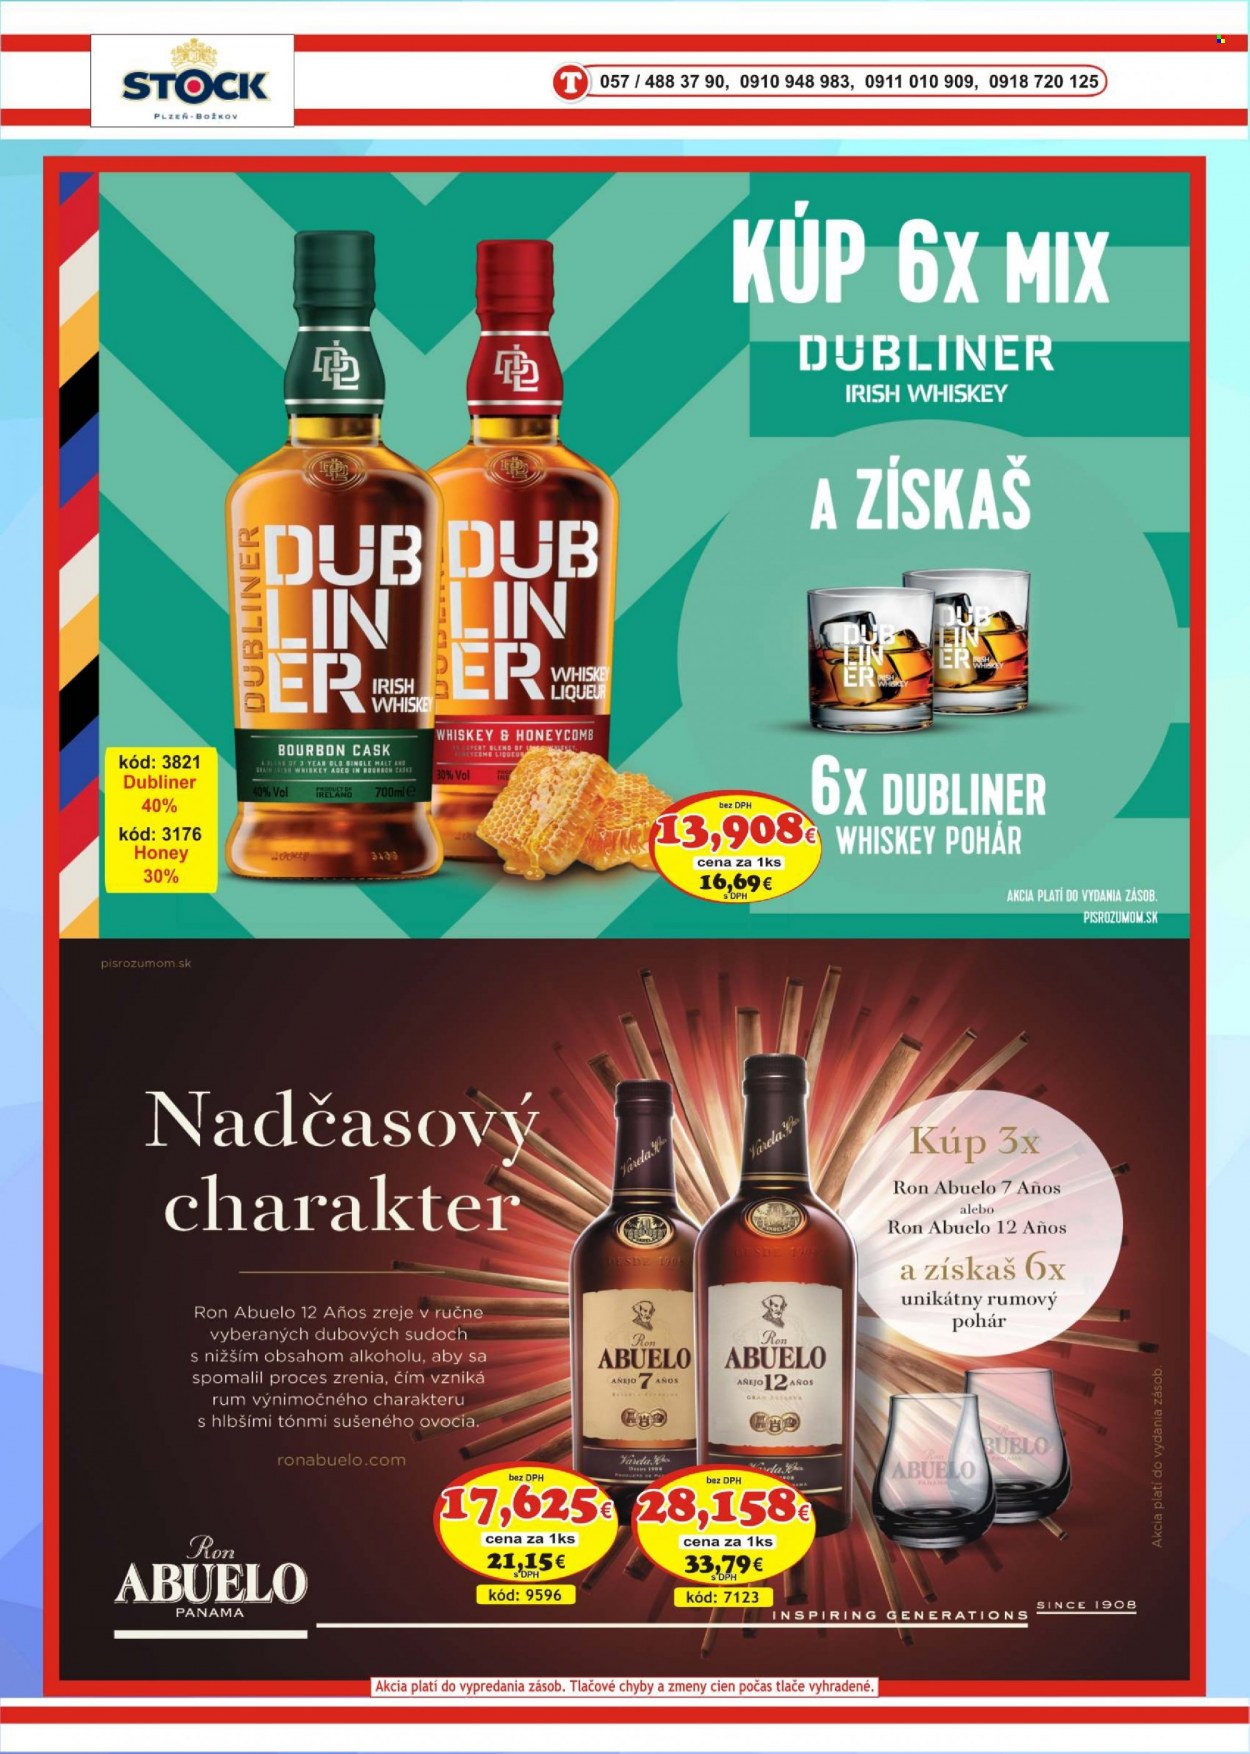 Leták DMJ market - Produkty v akcii - alkohol, Pilsner Urquell, rum, whisky, Božkov, Cien. Strana 36.